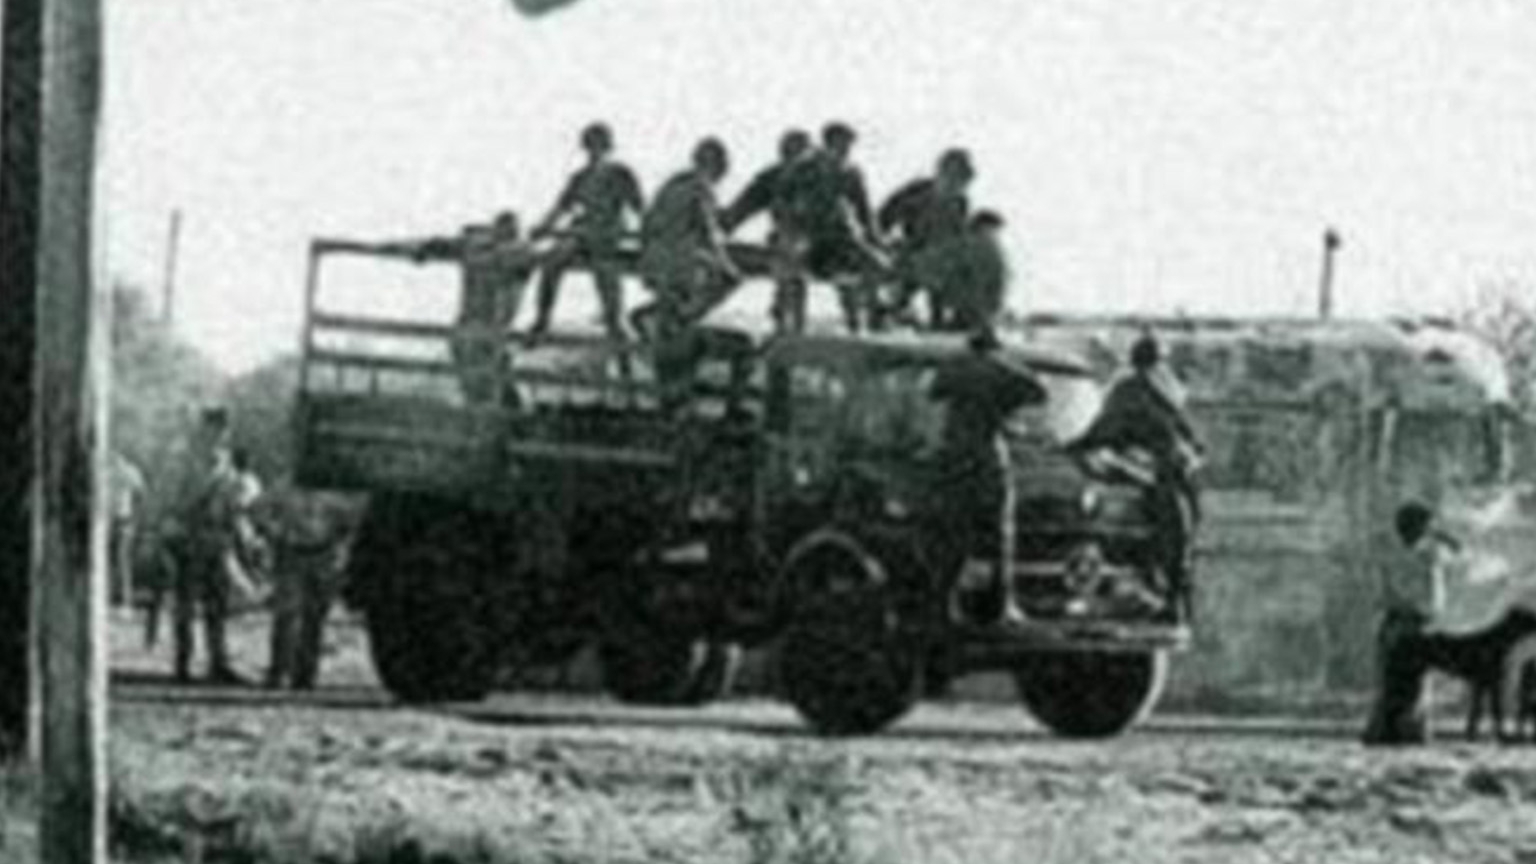 El Ejército Revolucionario del Pueblo (ERP) atacó el 23 de diciembre de 1975 el batallón de arsenales del Ejército Domingo Viejobueno, ubicado en la localidad bonaerense de Monte Chingolo